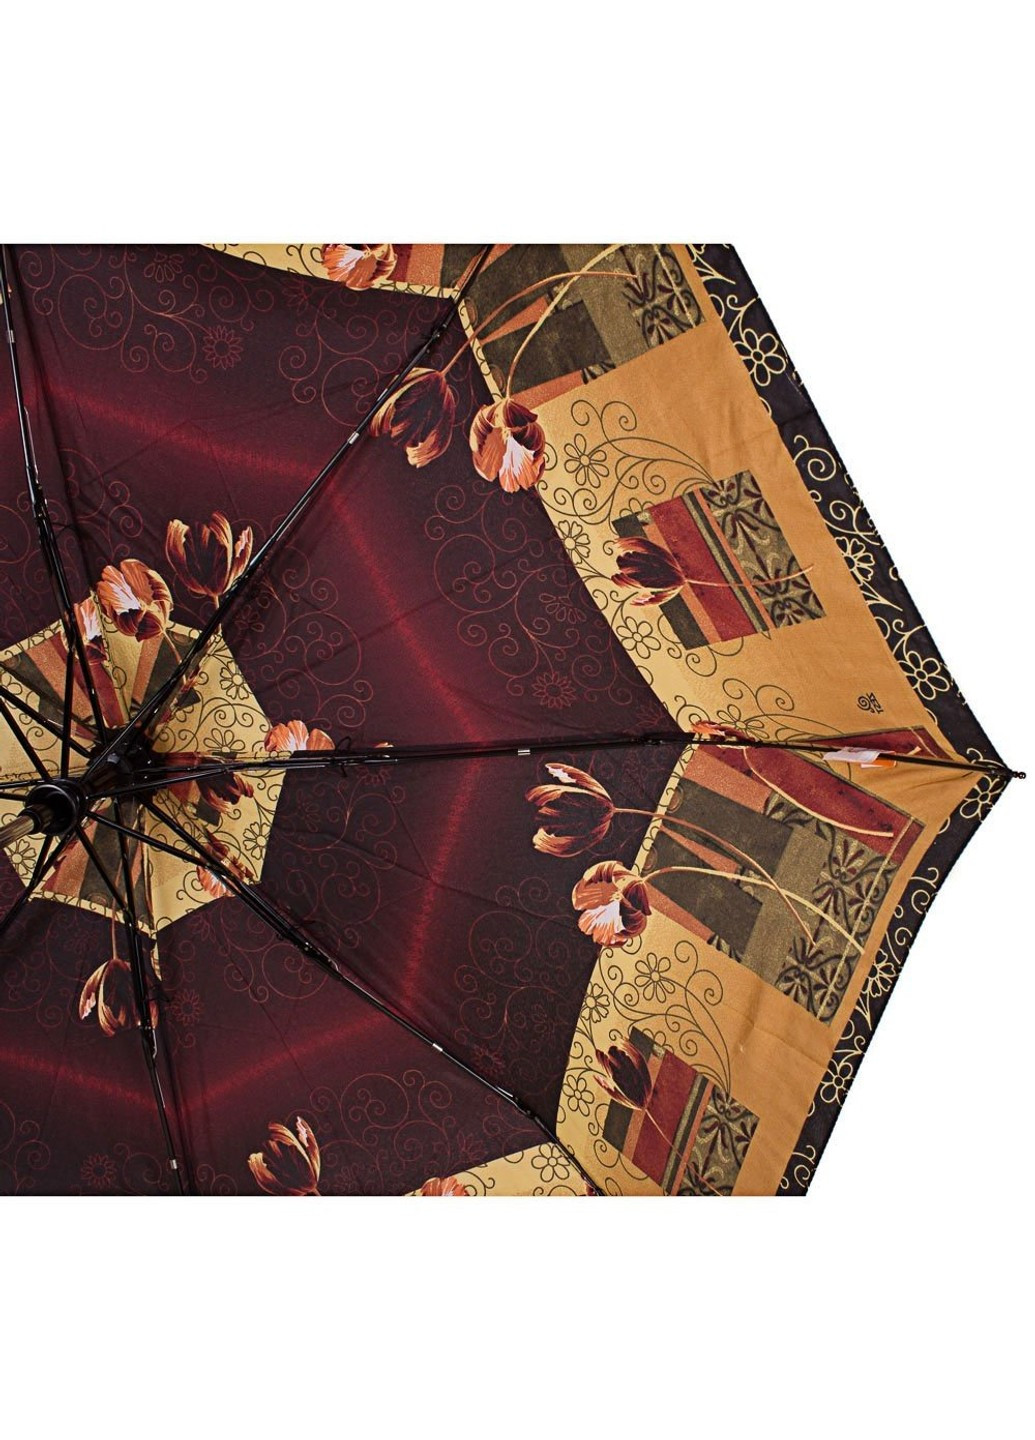 Зонт женский модный полуавтомат бордовый Airton (262976742)